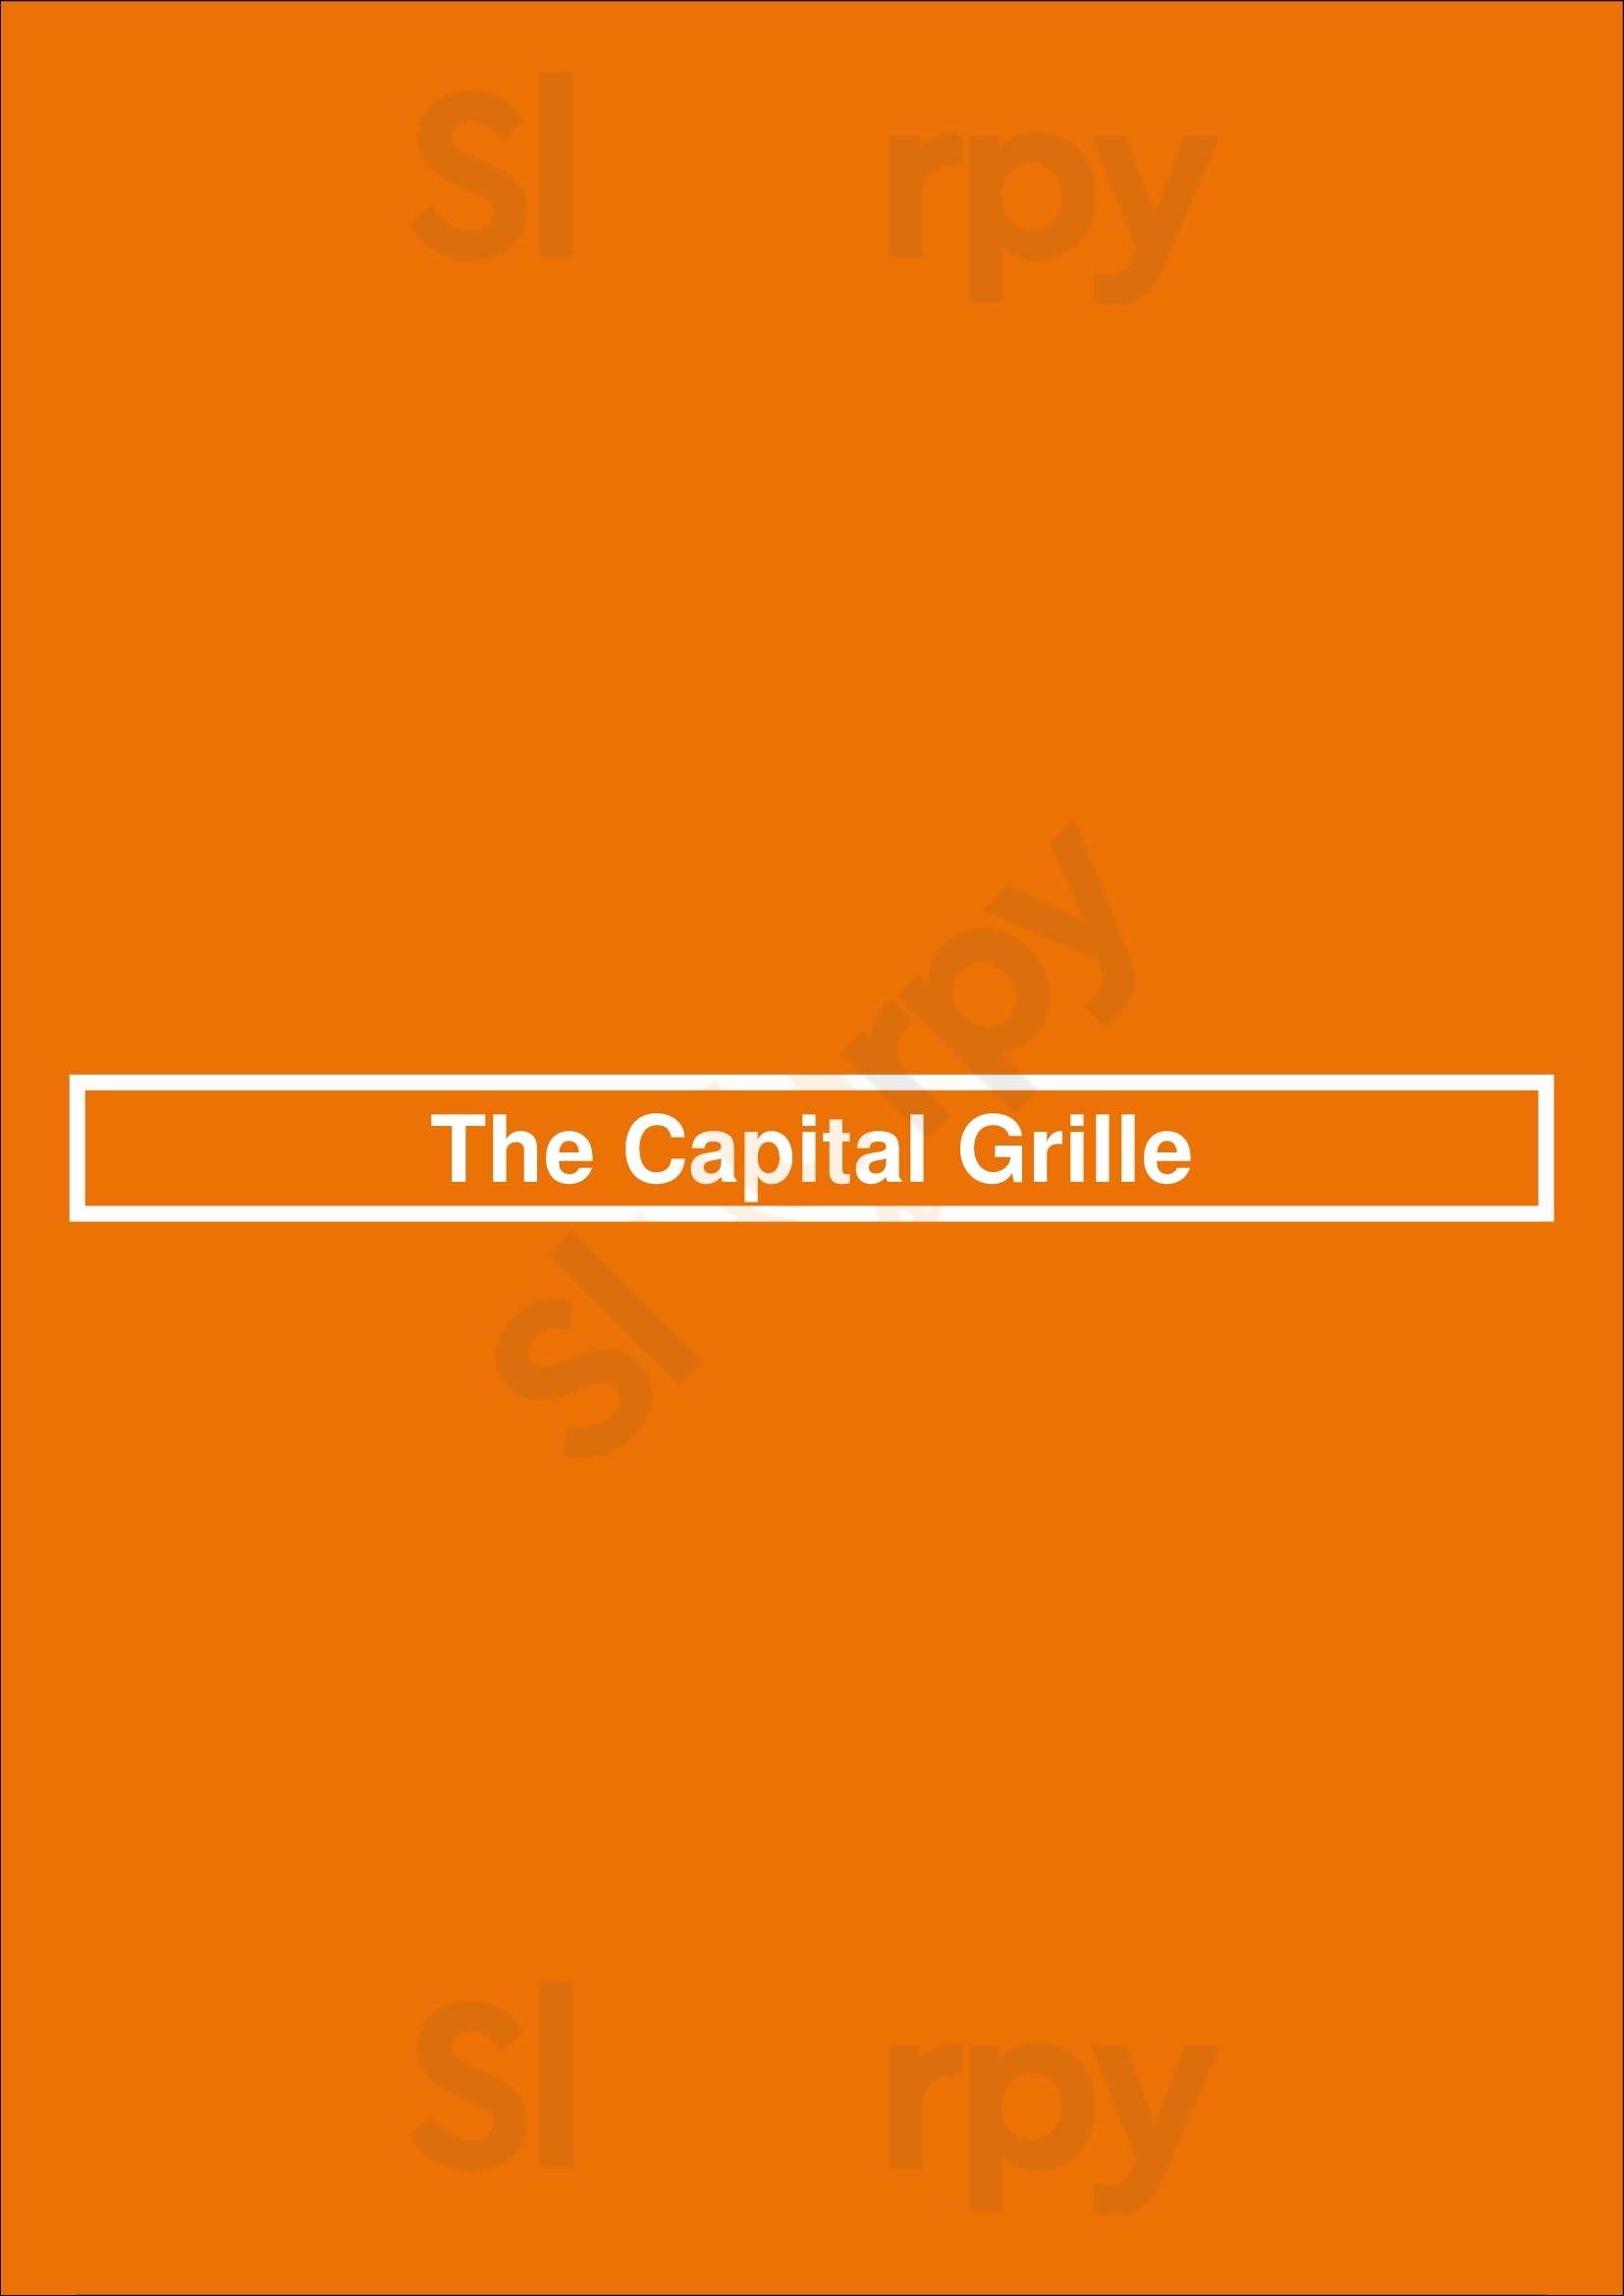 The Capital Grille Dallas Menu - 1